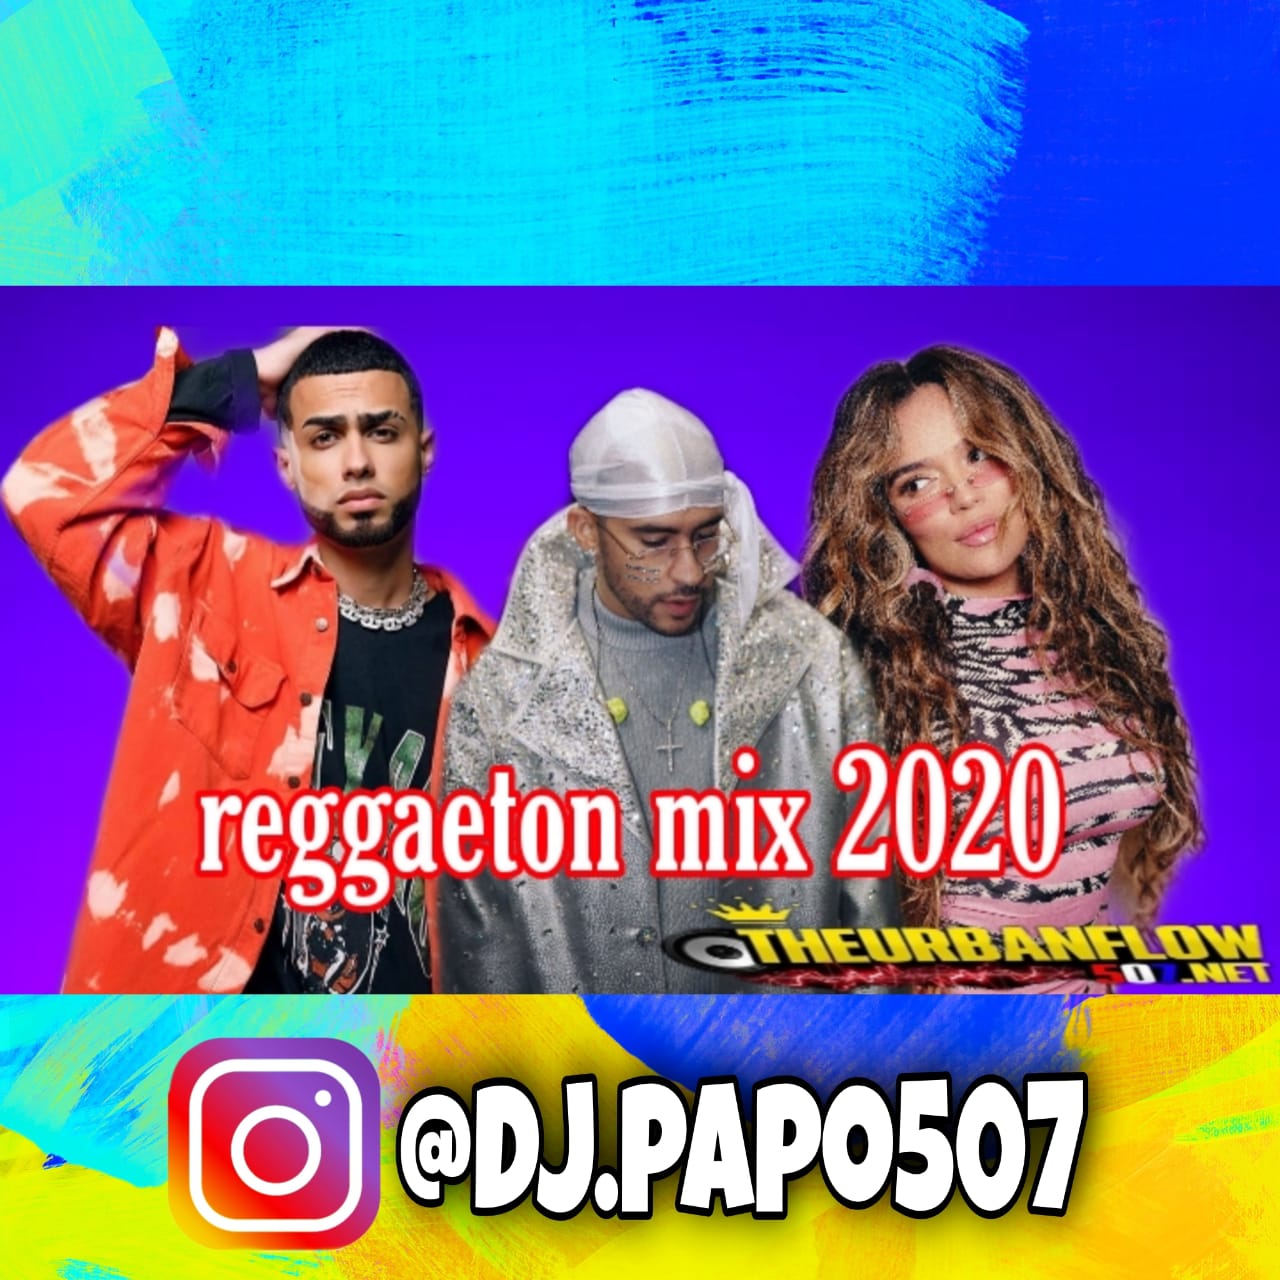 Reggaeton Mix 2020 -@Dj.papo507